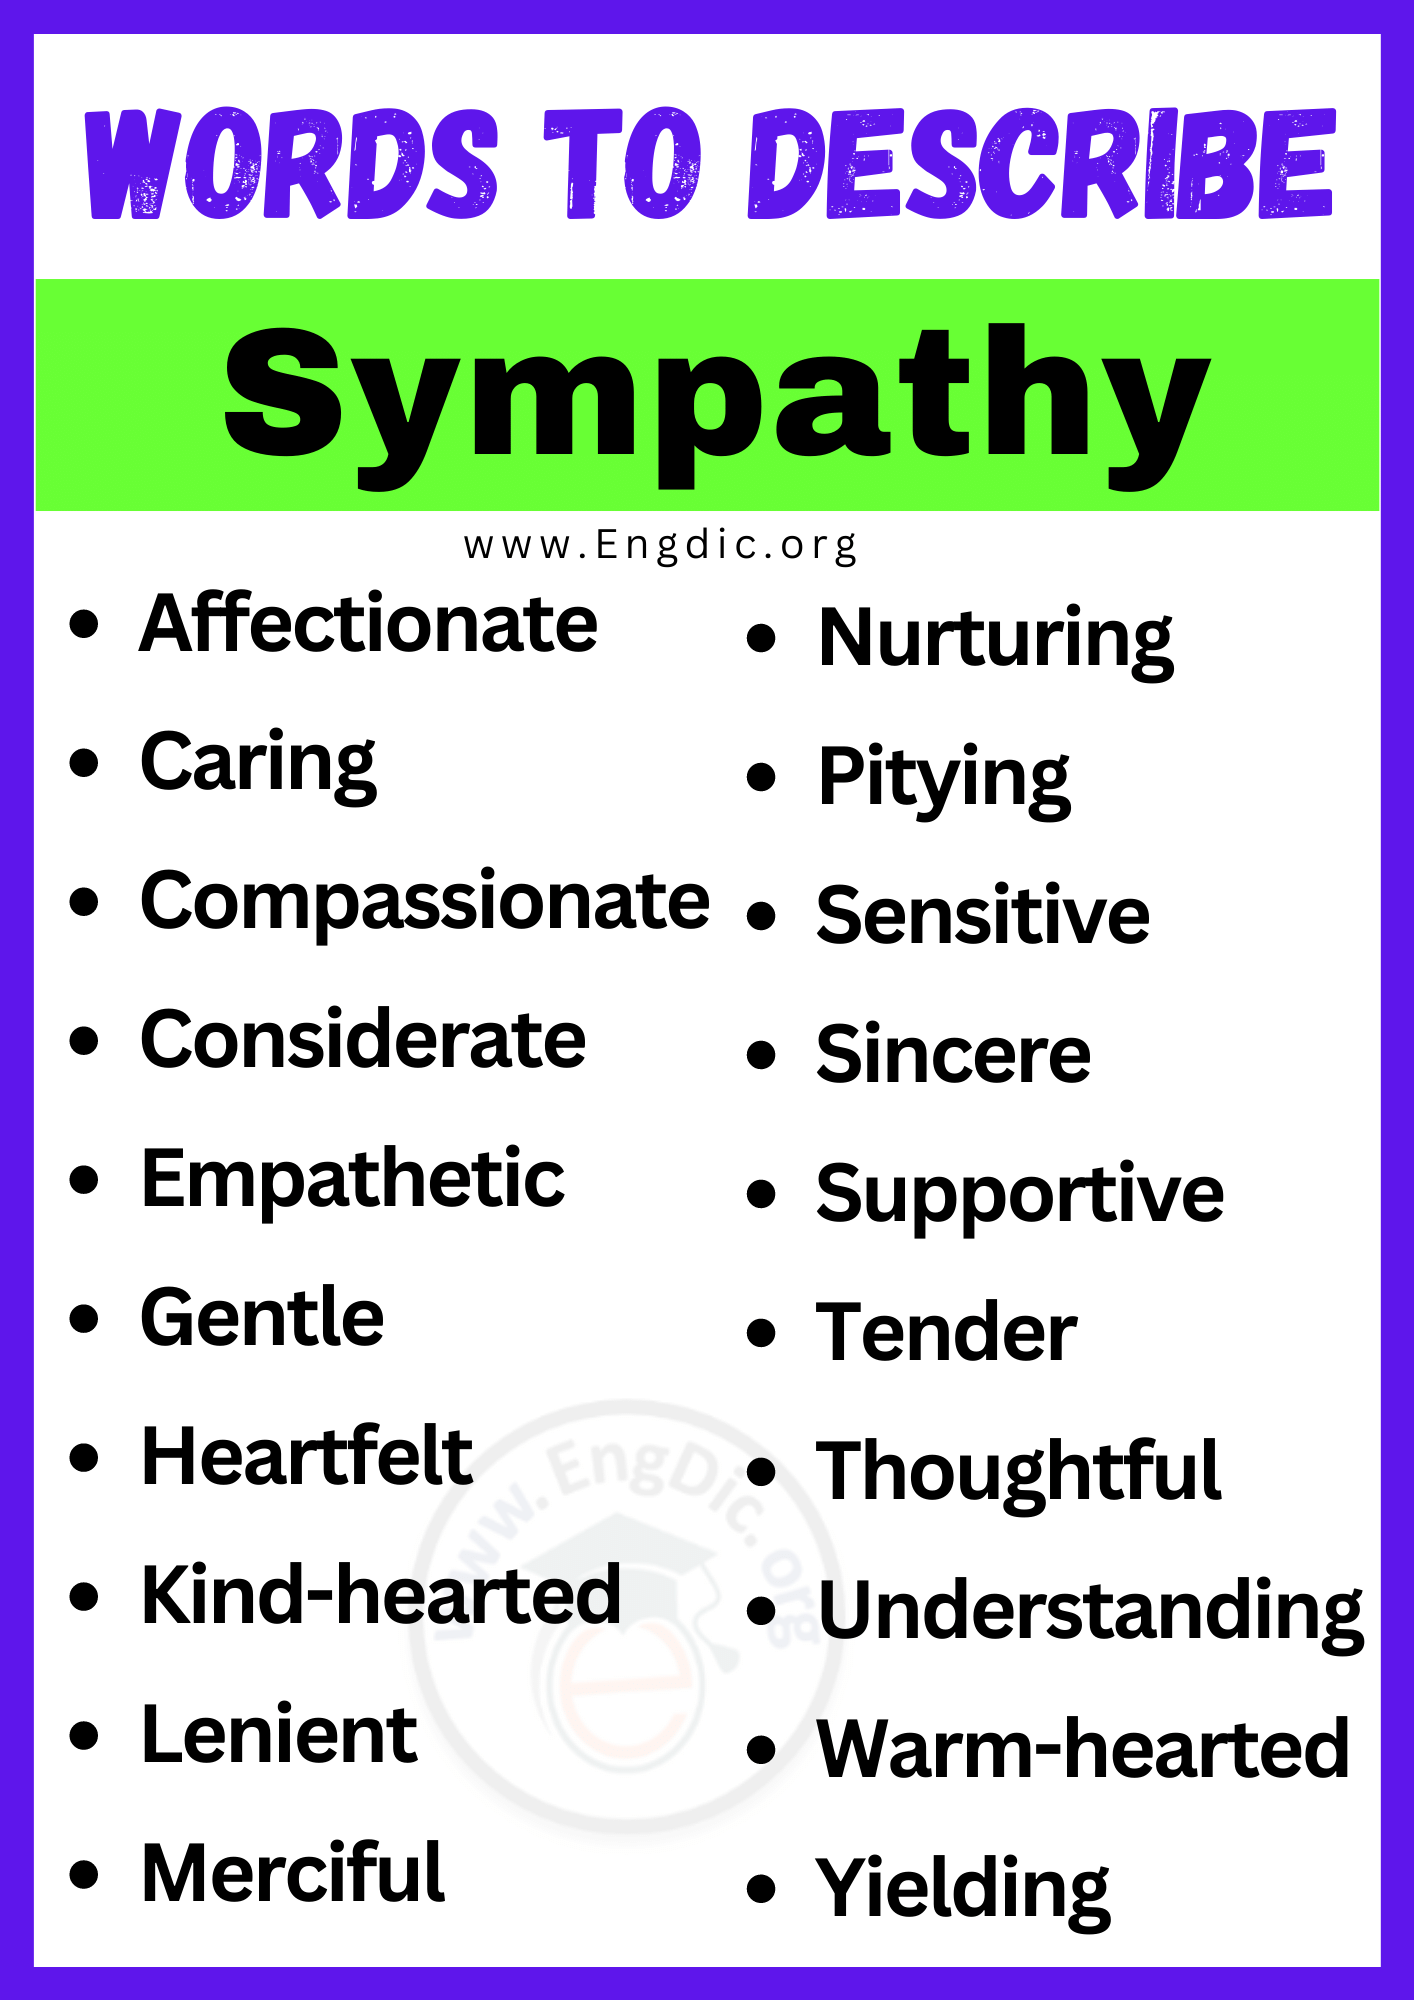 Words to Describe Sympathy